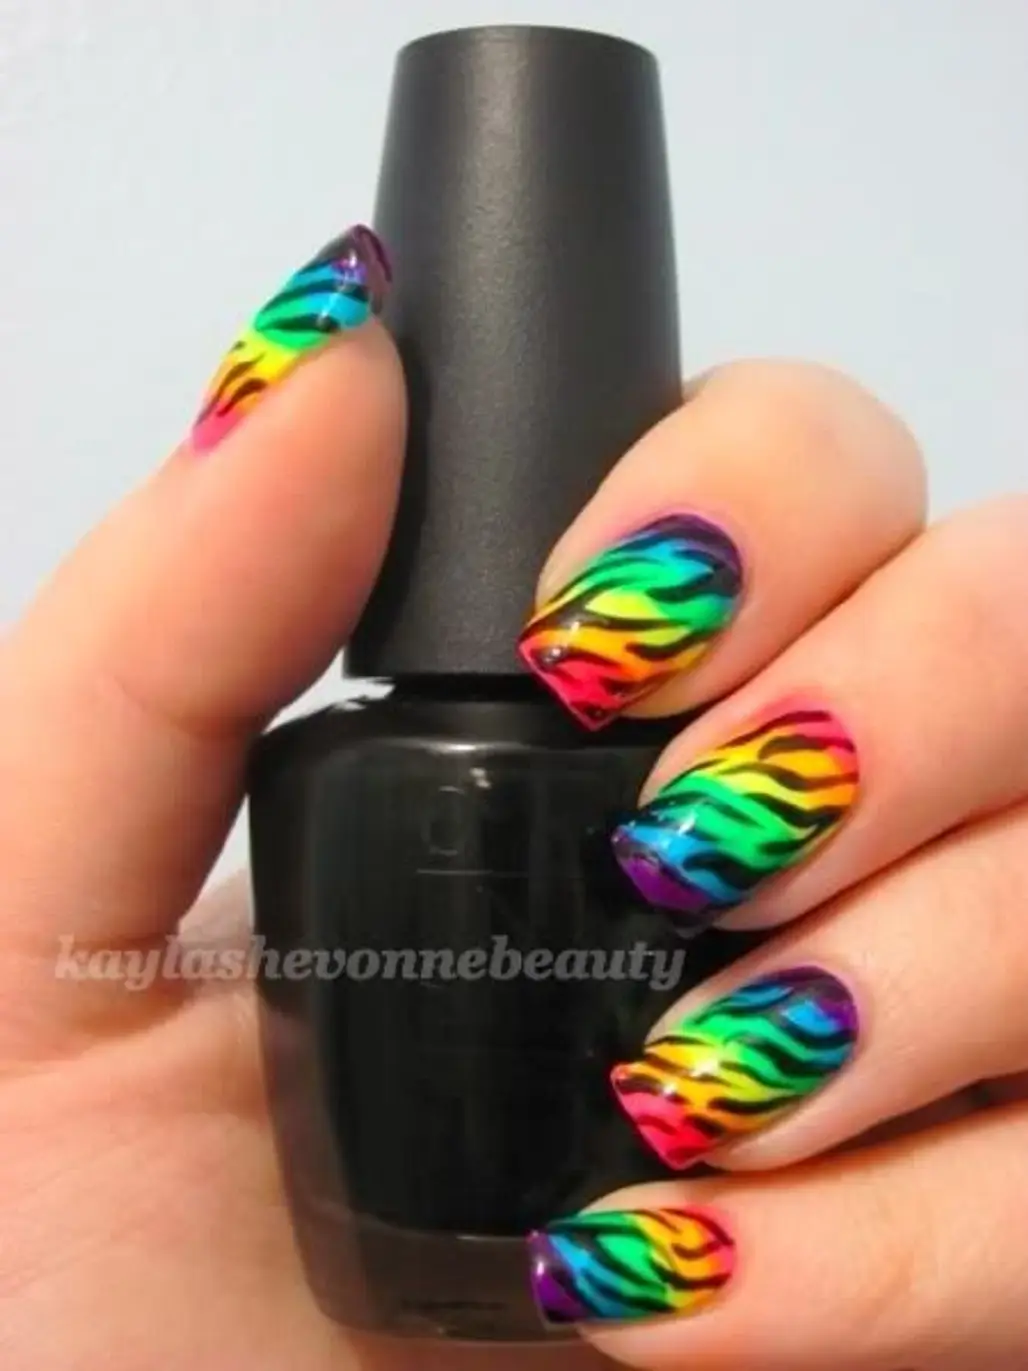 color,finger,nail polish,nail,nail care,